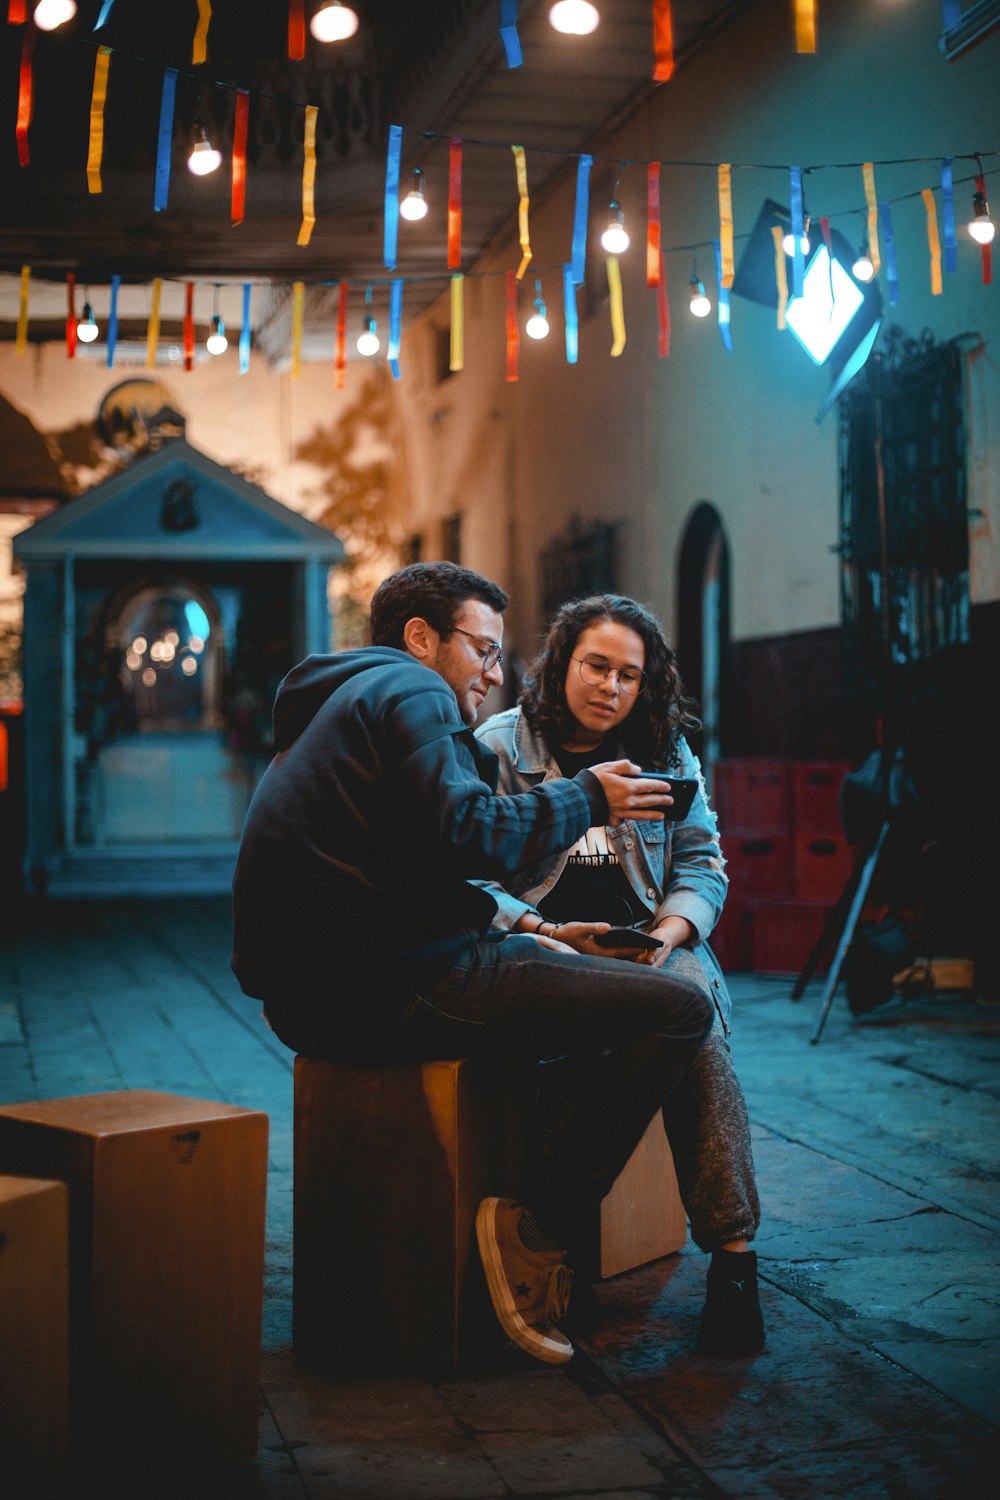 Un hombre y una mujer sentados en un banco mirando un teléfono celular